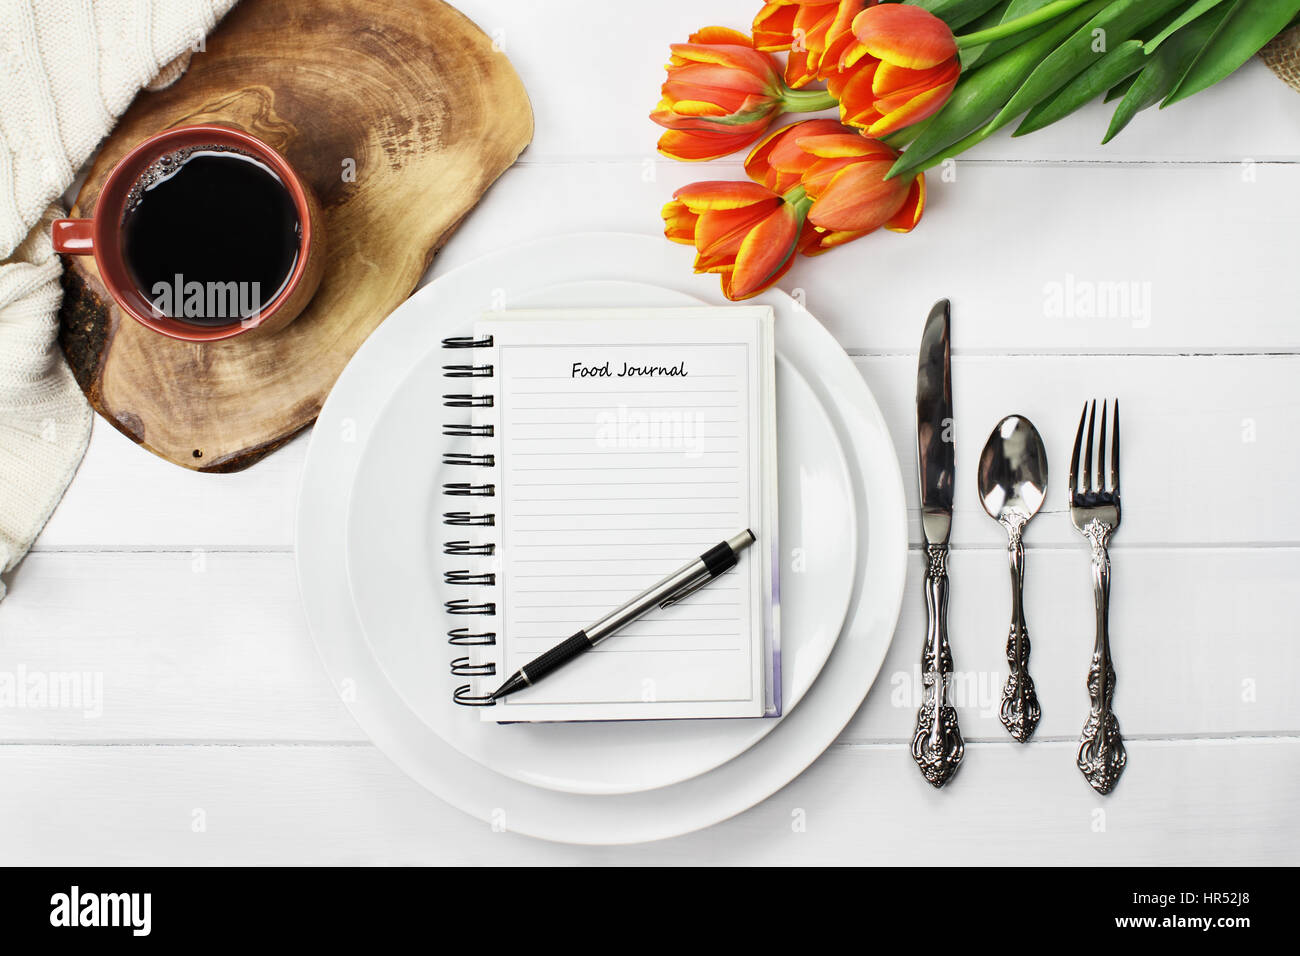 Fotografía cenital de un diario de alimentos a través de platos vacíos con una taza de café y un ramo de flores de tulipanes de primavera sobre la mesa de madera blanca. Sentar plana t Foto de stock